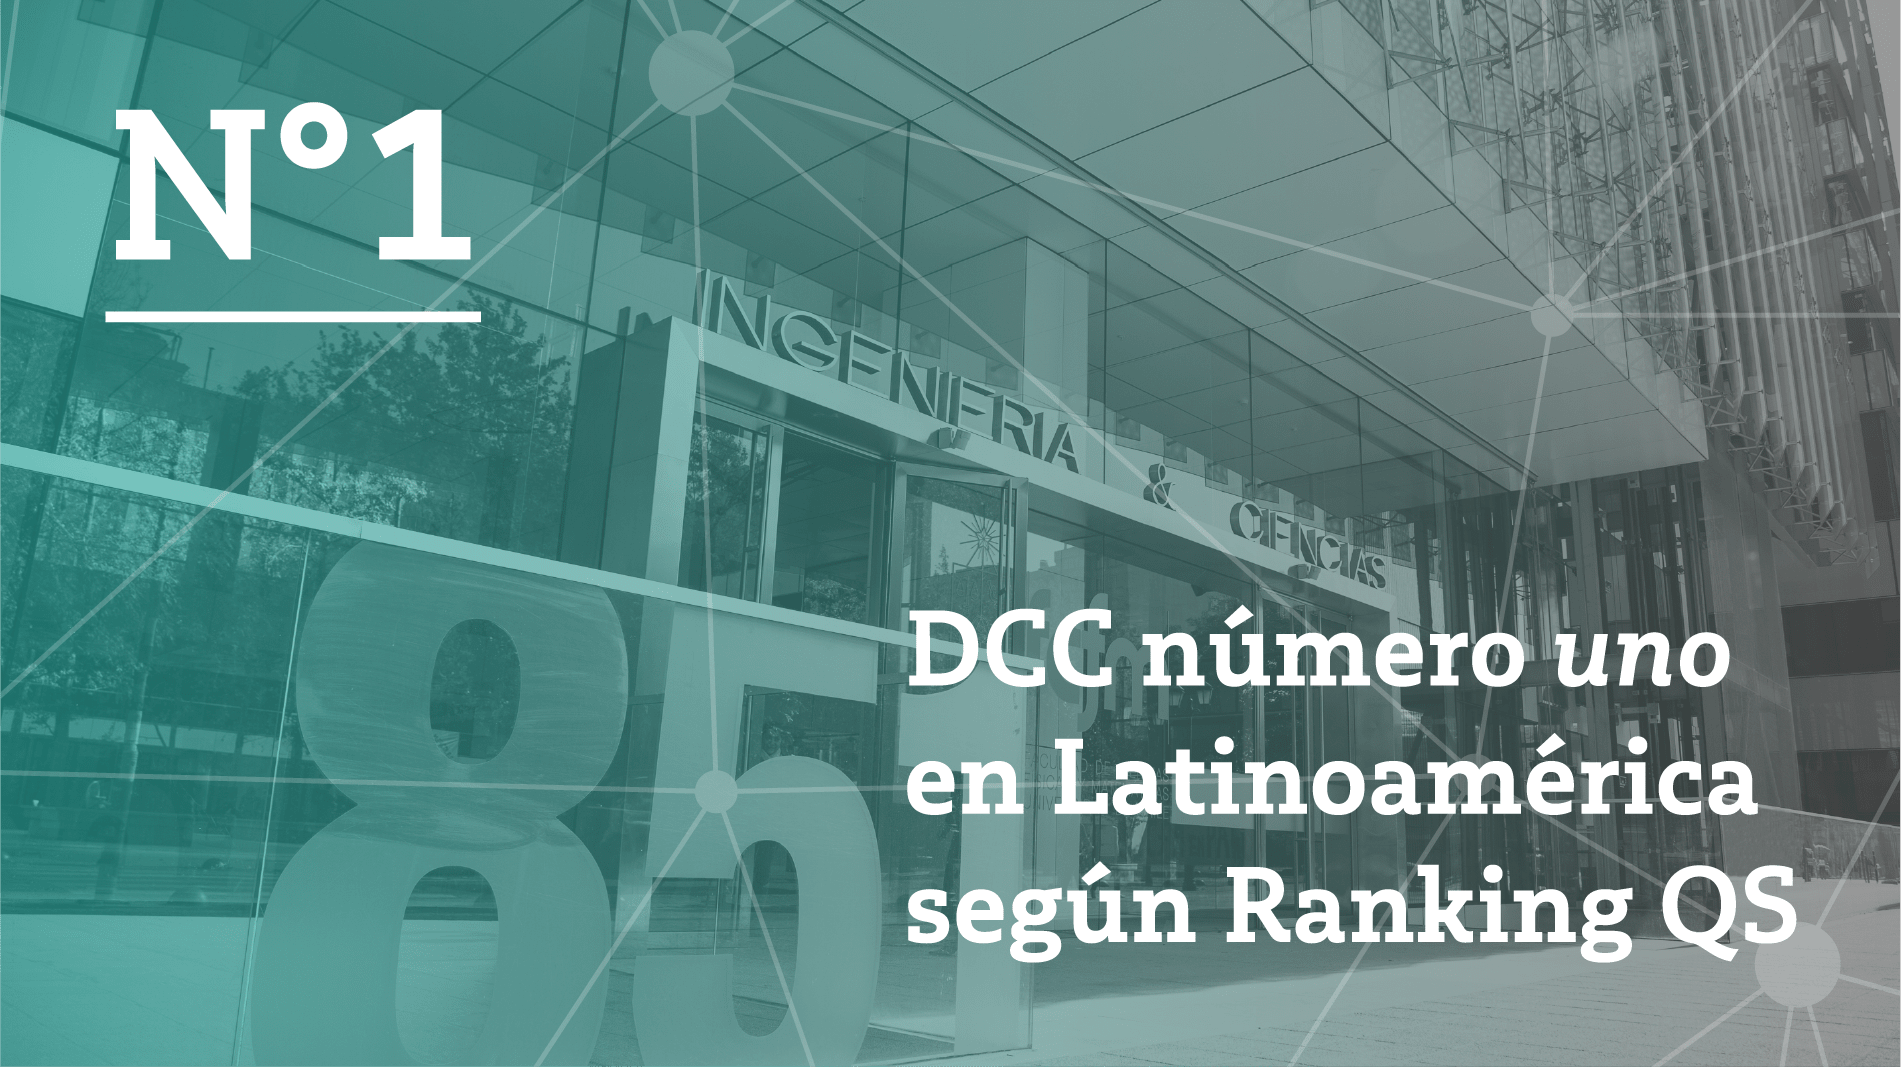 DCC número uno en Latinoamérica según Ranking QS